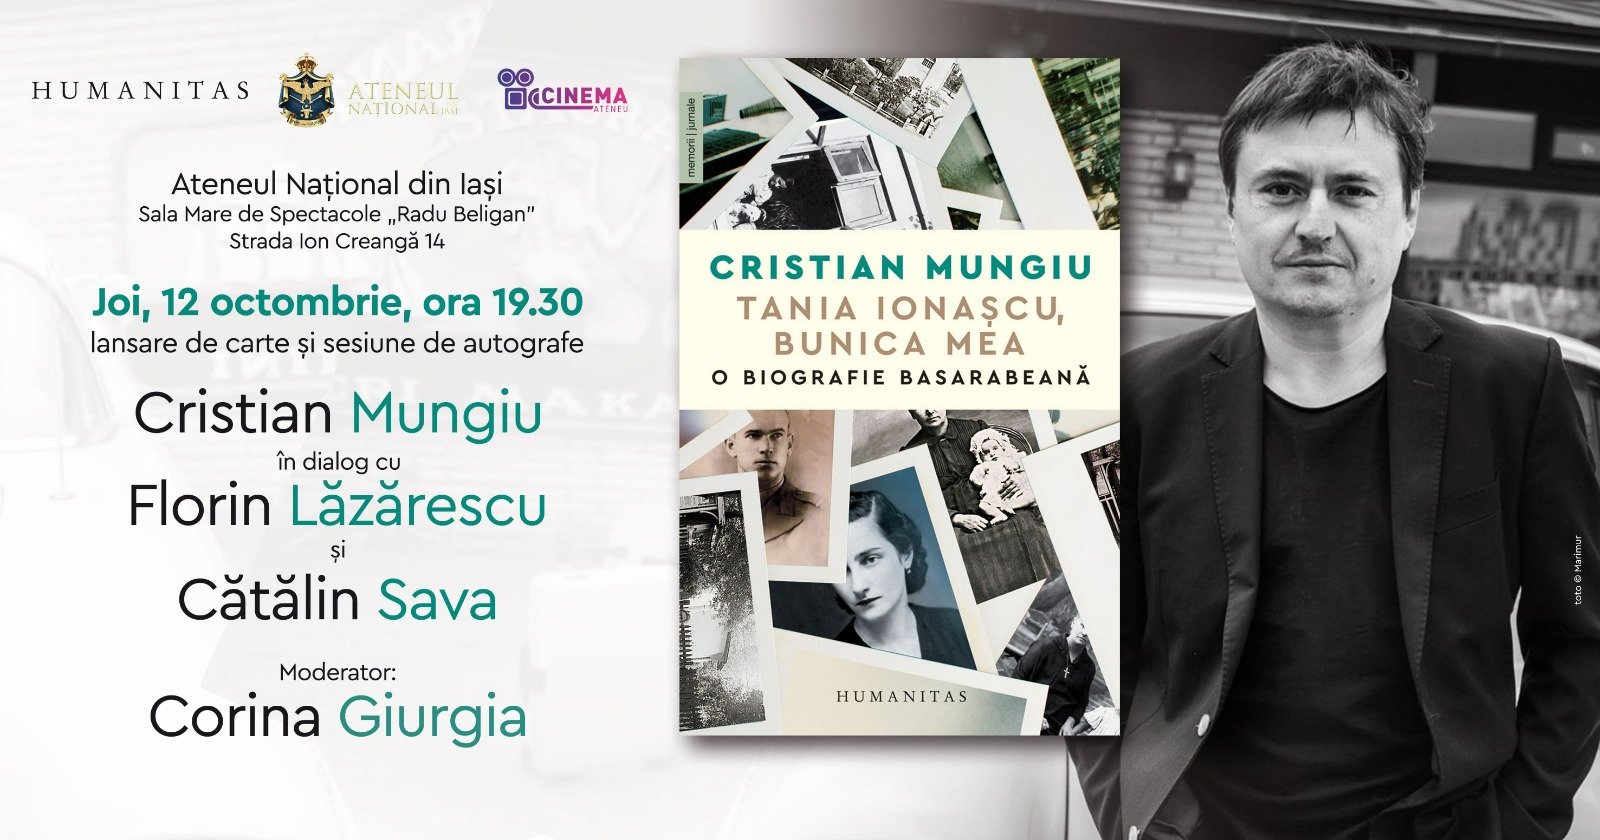  Cristian Mungiu, sărbătorit mâine public în Tătăraşi. Vizionare de film, lansarea cărţii lui de memorii, discuţii